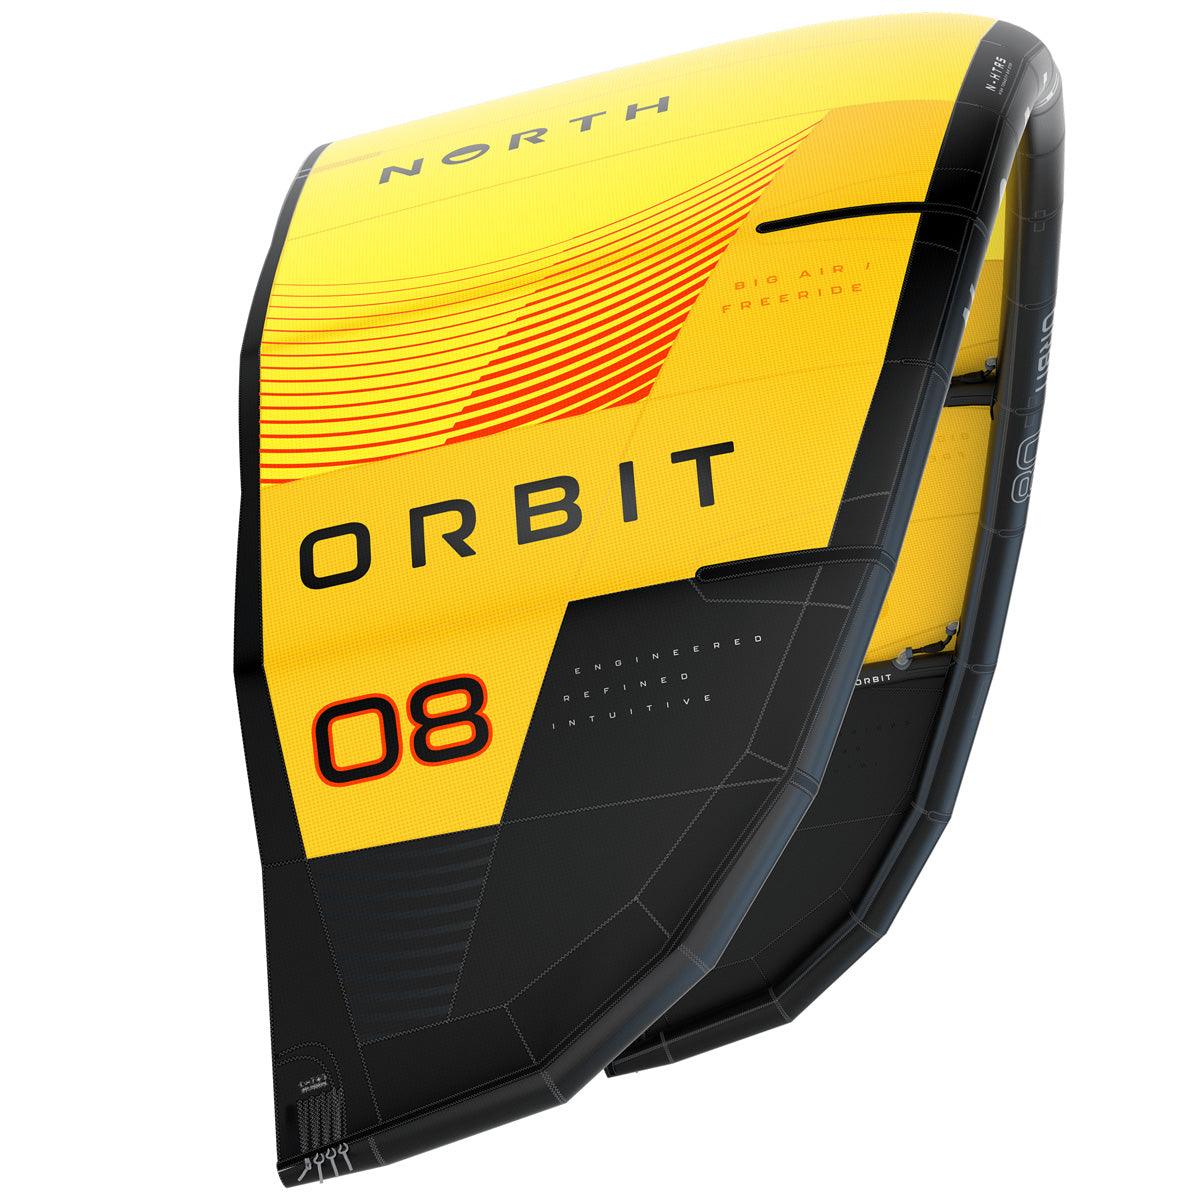 North Orbit - Kiteshop.com